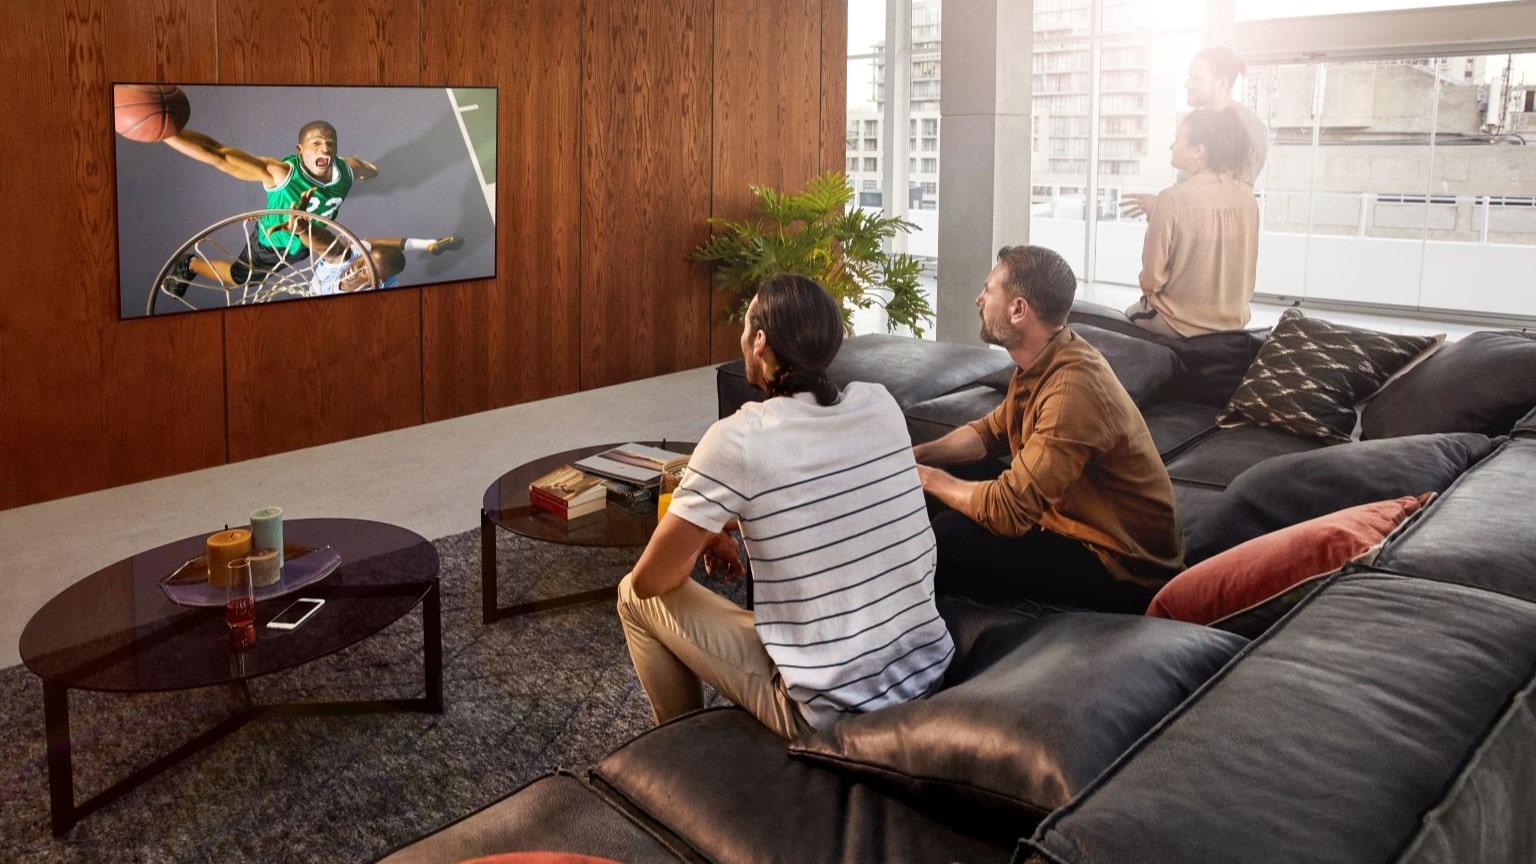 Curiosità su giochi olimpici 2024: immagine di persone che guardano un TV LG.